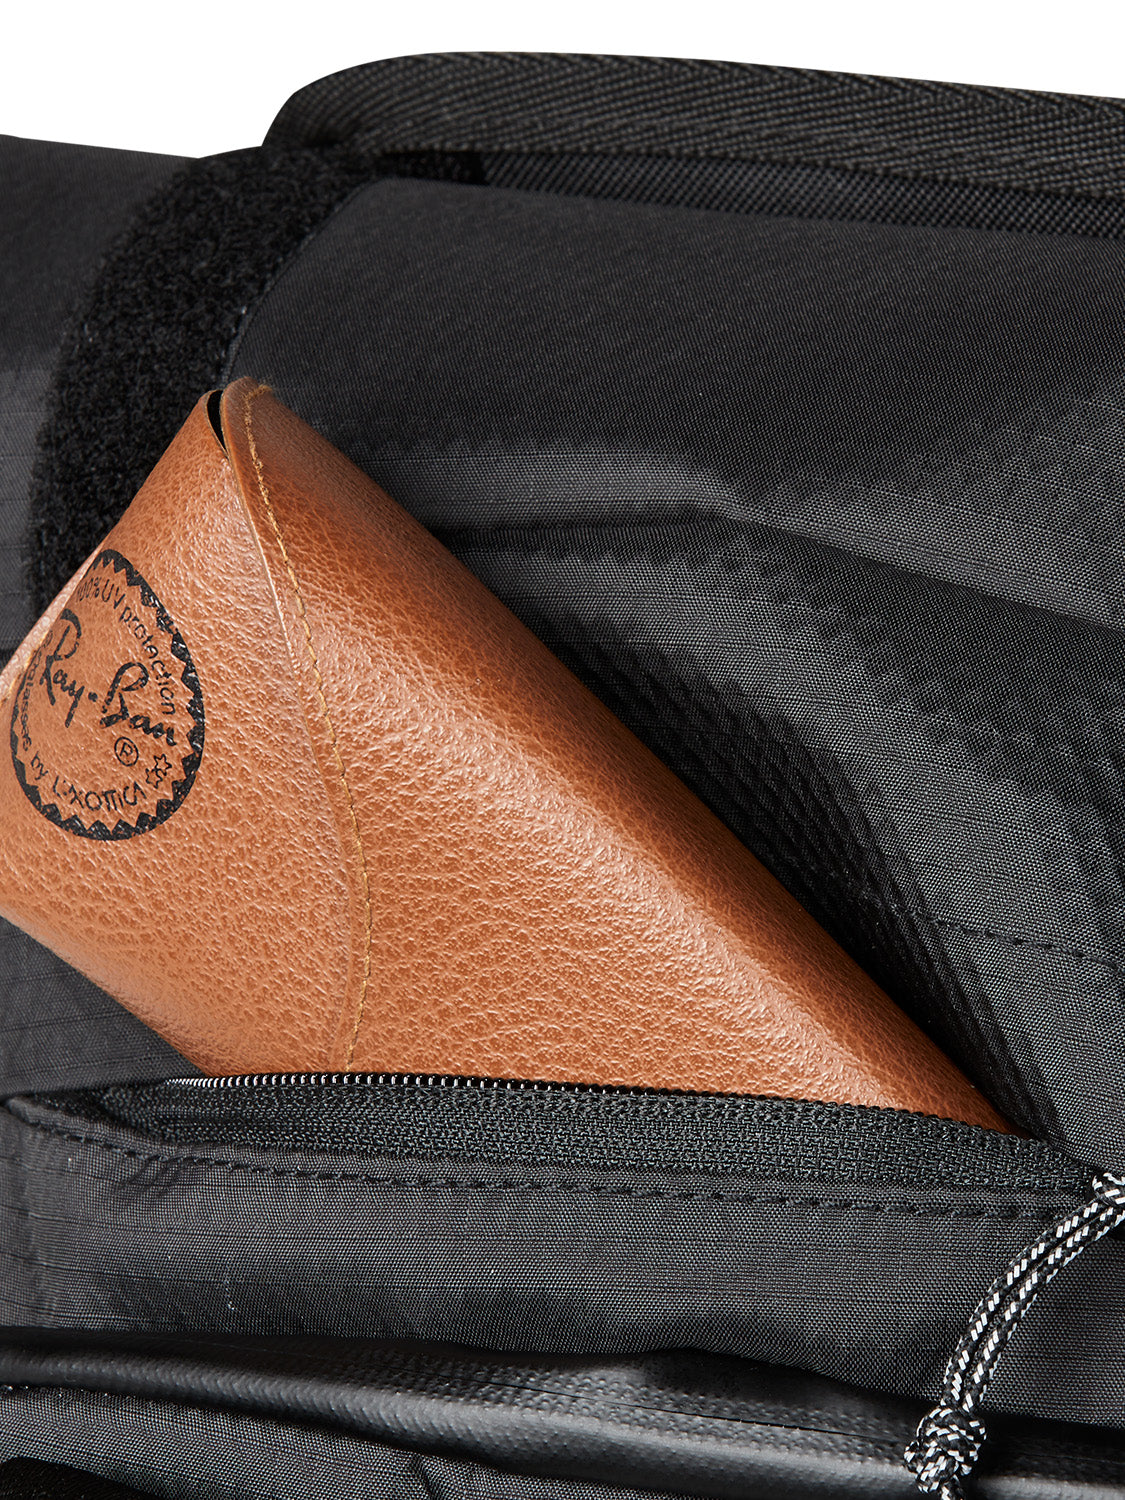 AEVOR-backpack-Trip-Pack-Proof-Black-detail